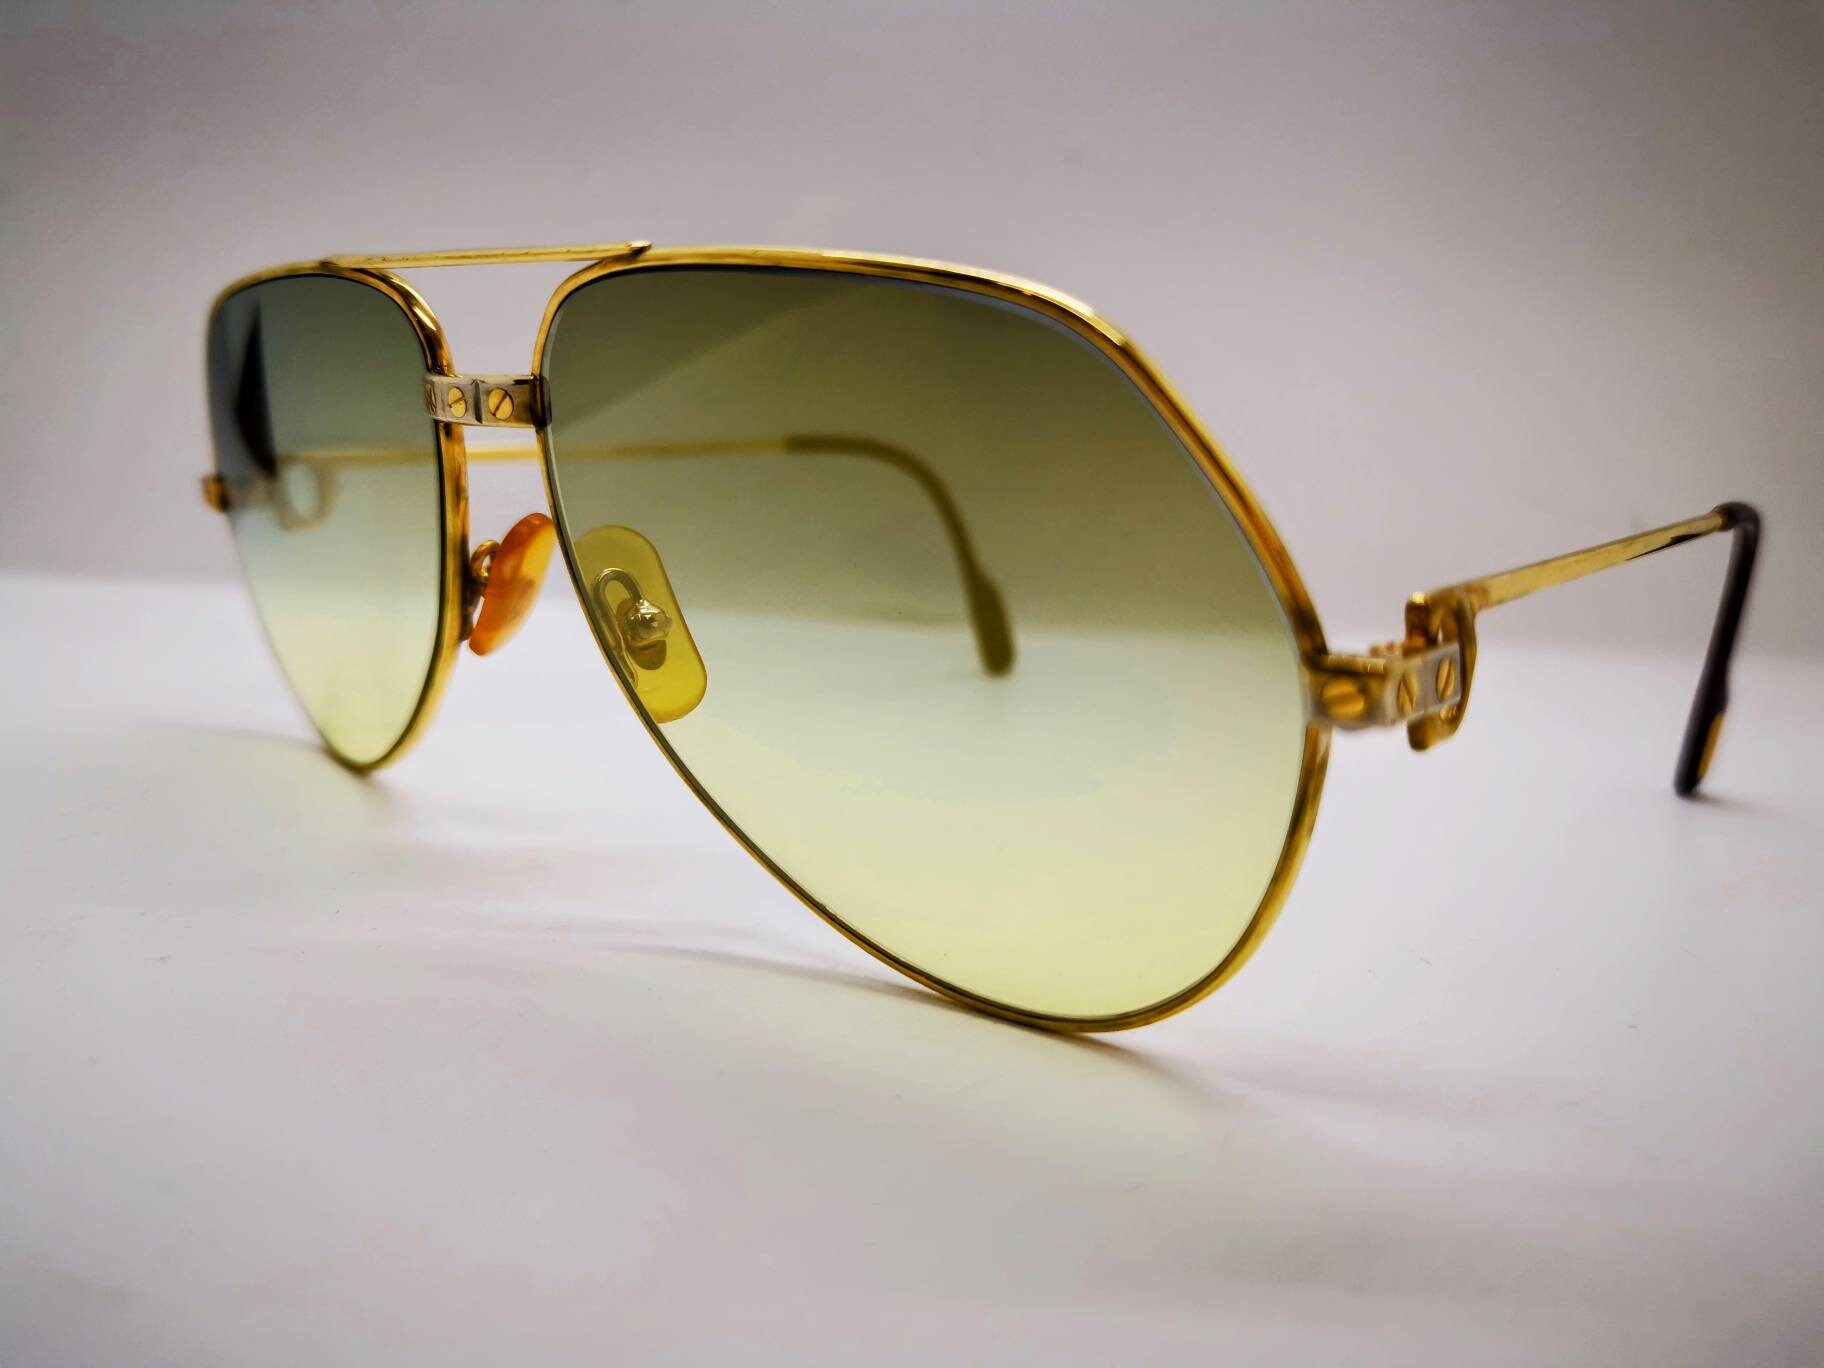 Discover more than 257 cartier vendome sunglasses